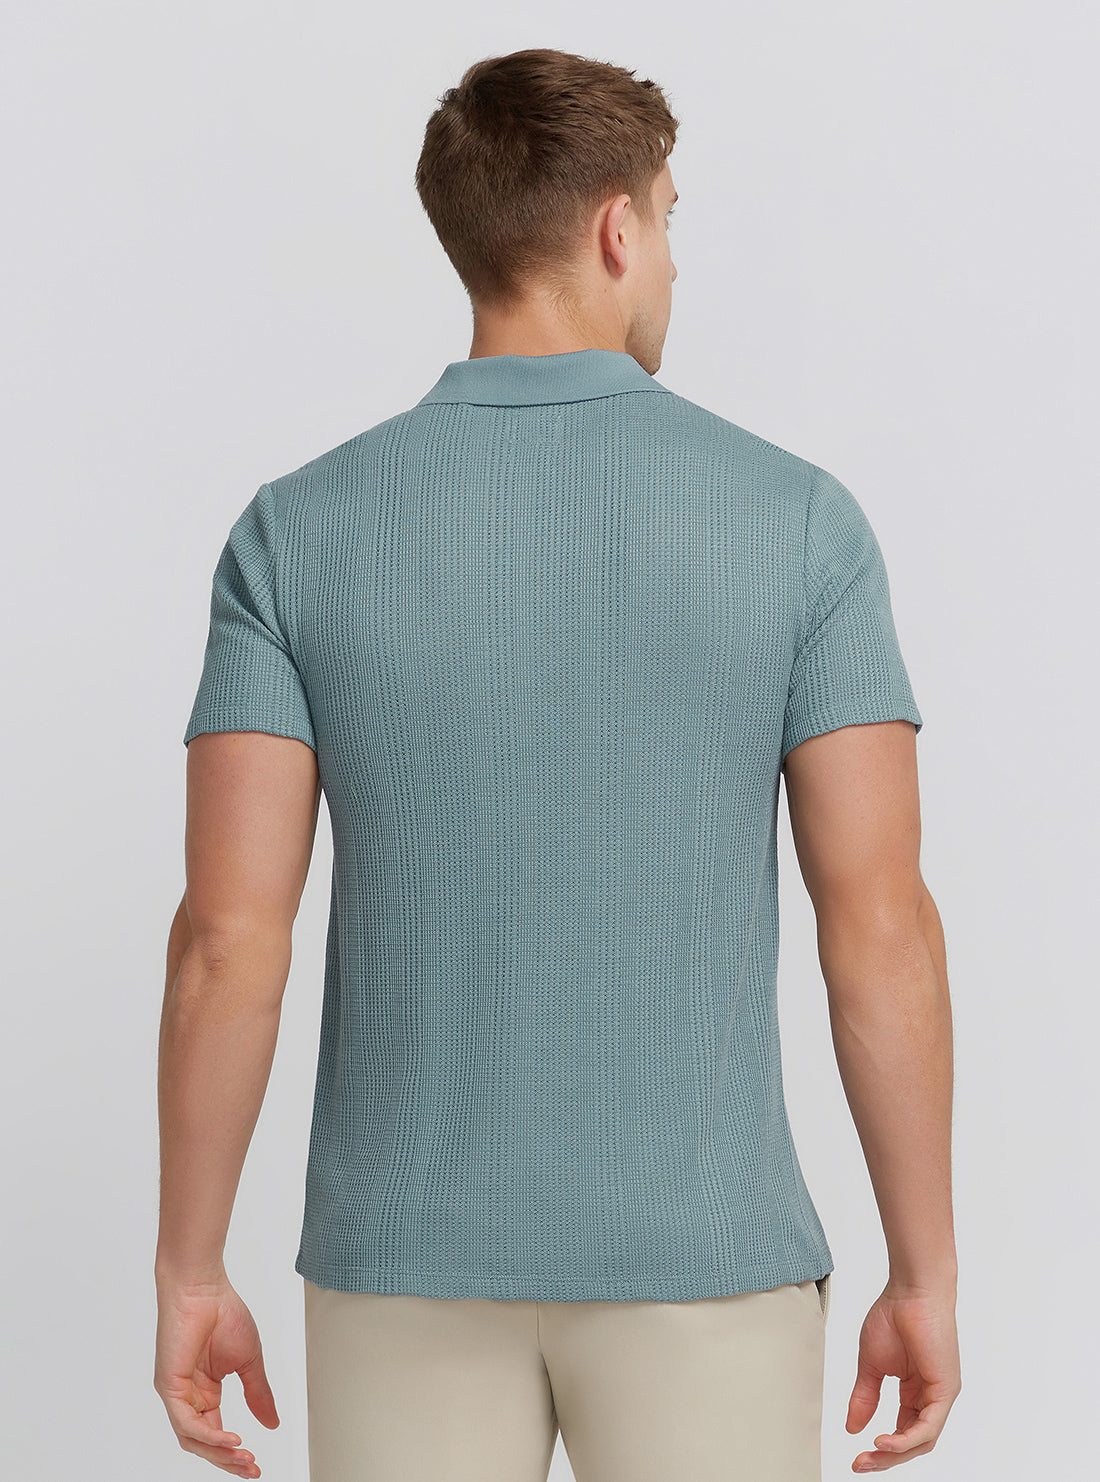 Blue Joshua Knit Shirt | GUESS Men's | Back view